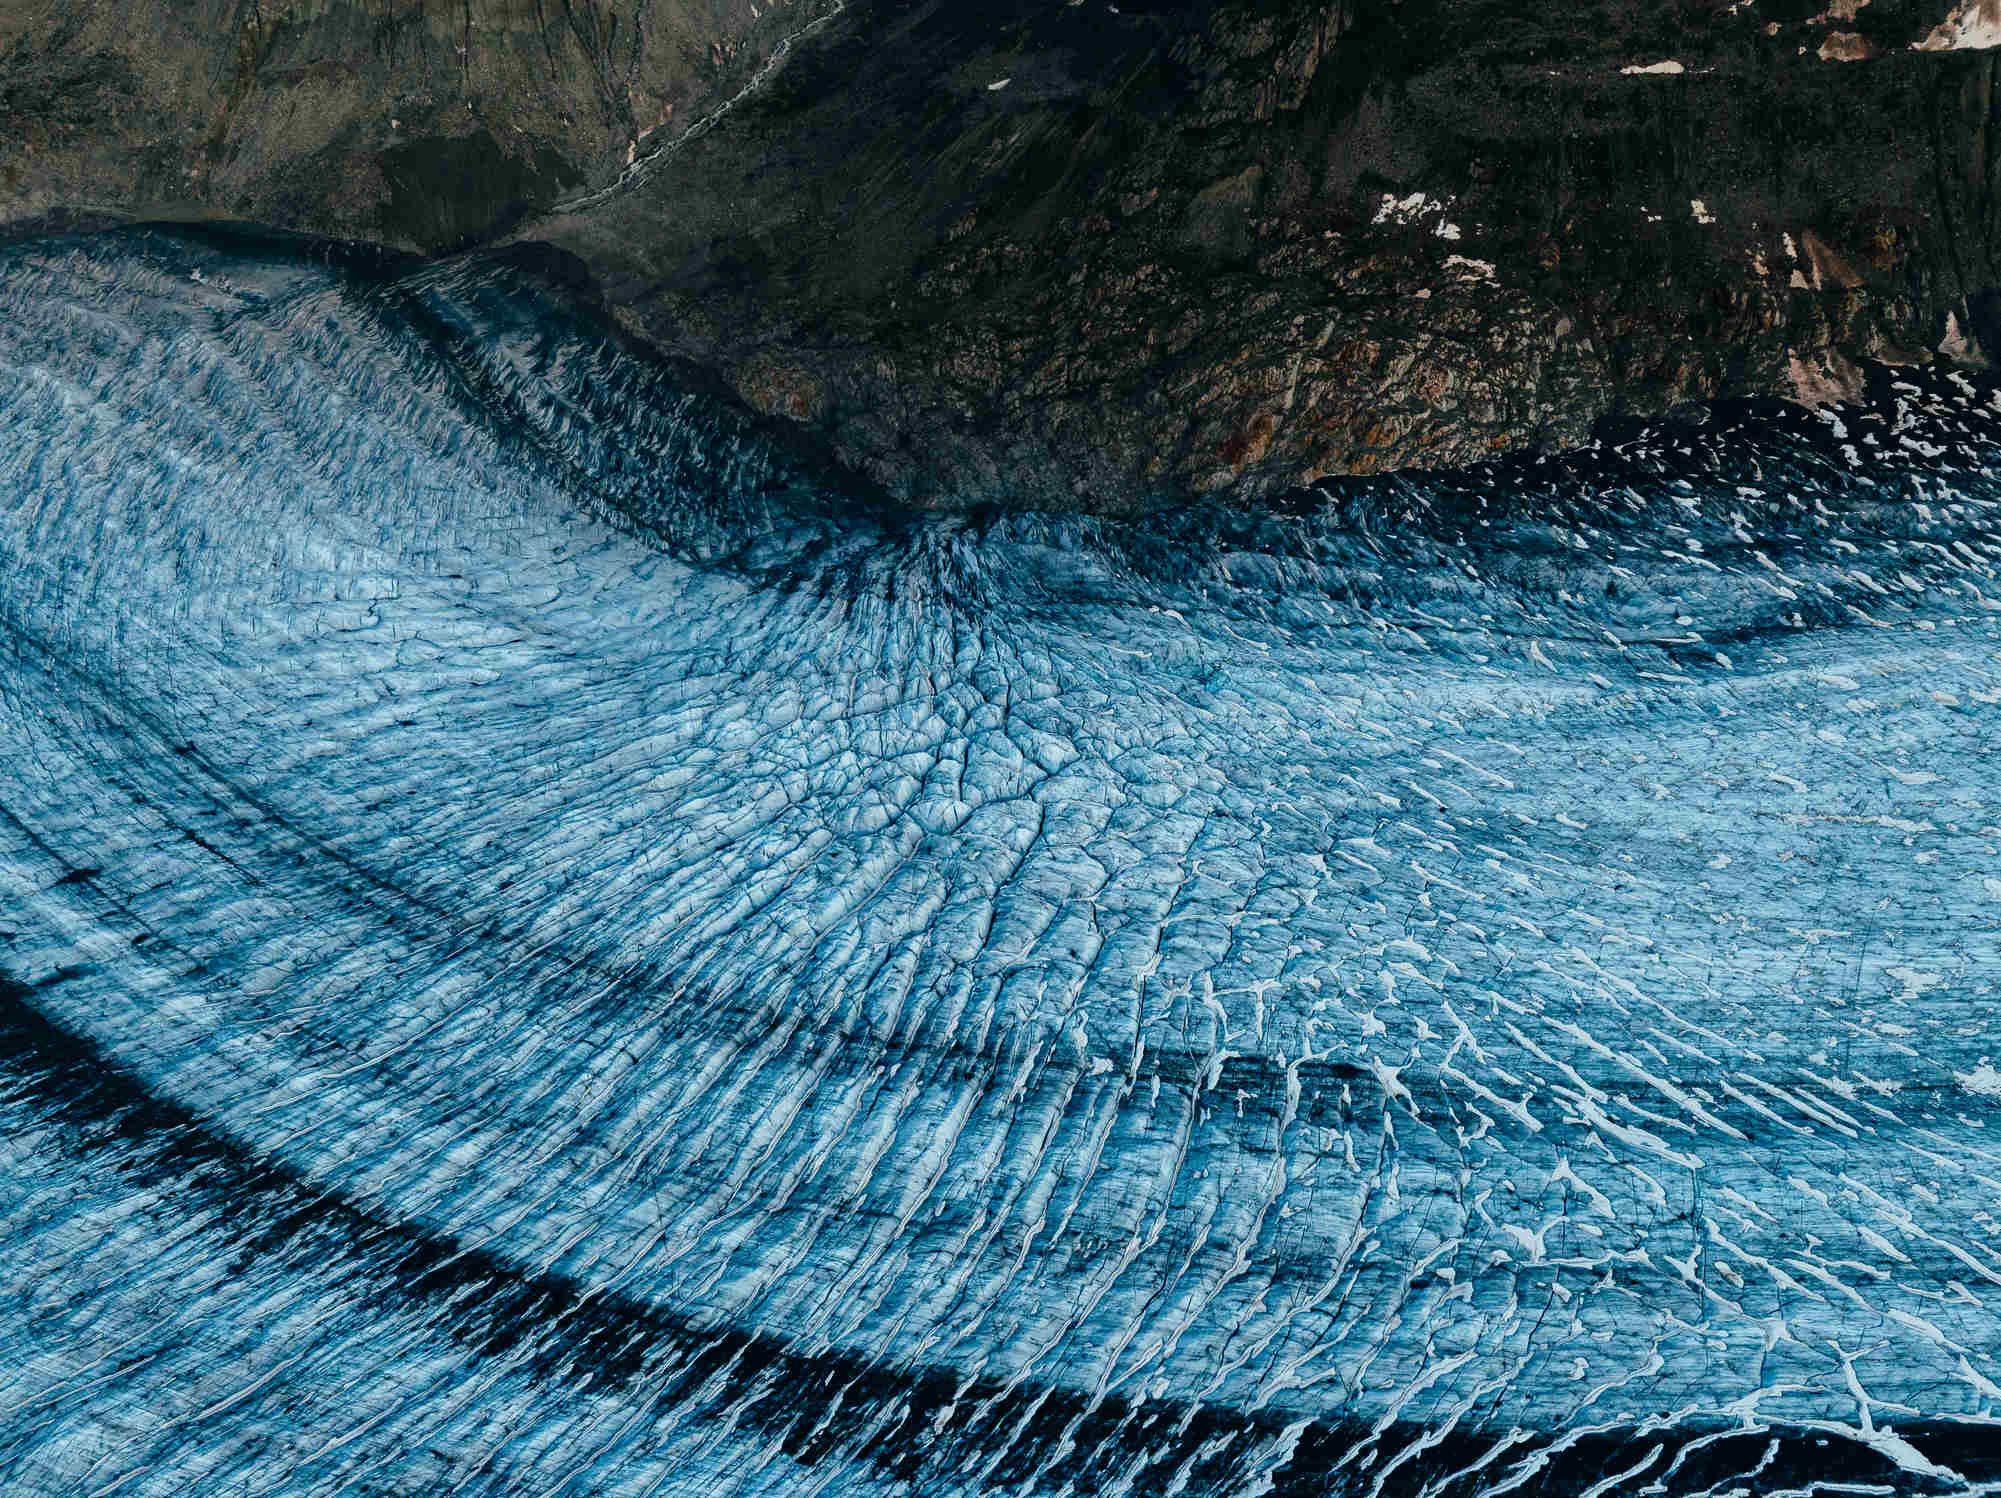 Details of the Aletsch Glacier in Switzerland